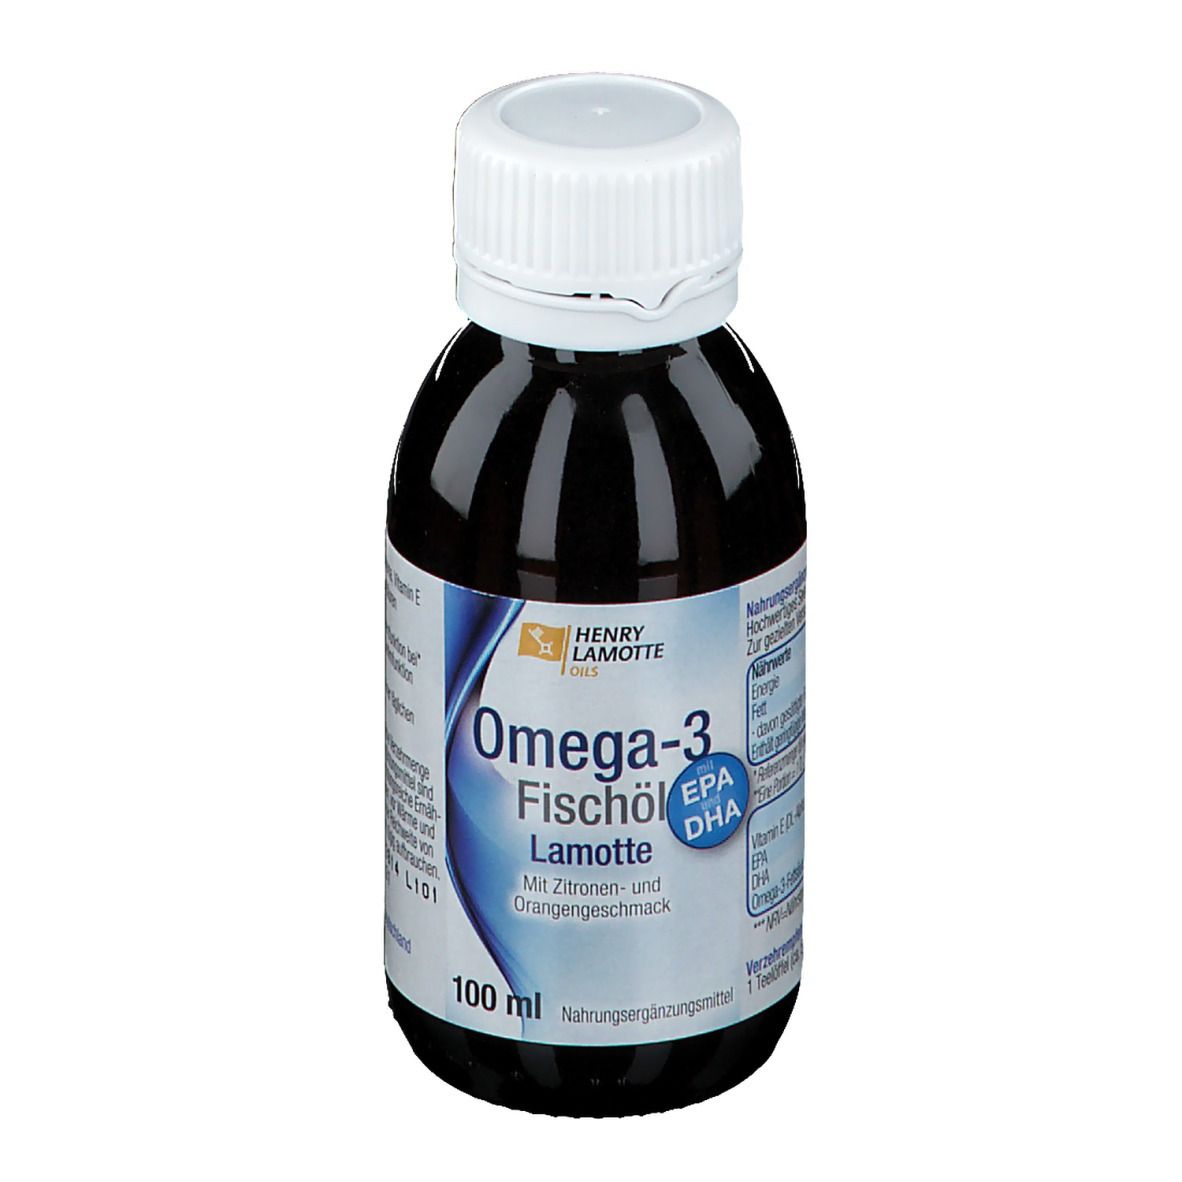 Image of HENRY LAMOTTE OILS Omega-3 Fischöl